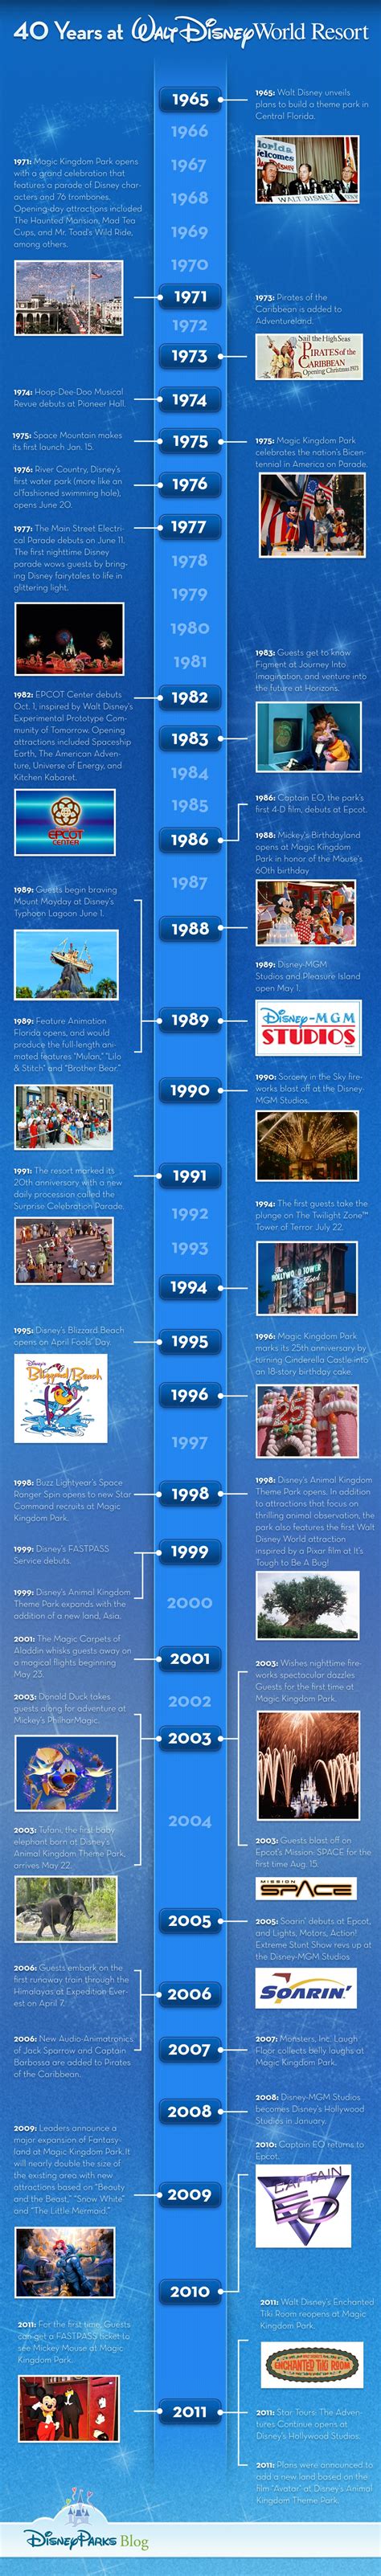 Timeline Celebrating 40 Years At Walt Disney World Disney Parks Blog